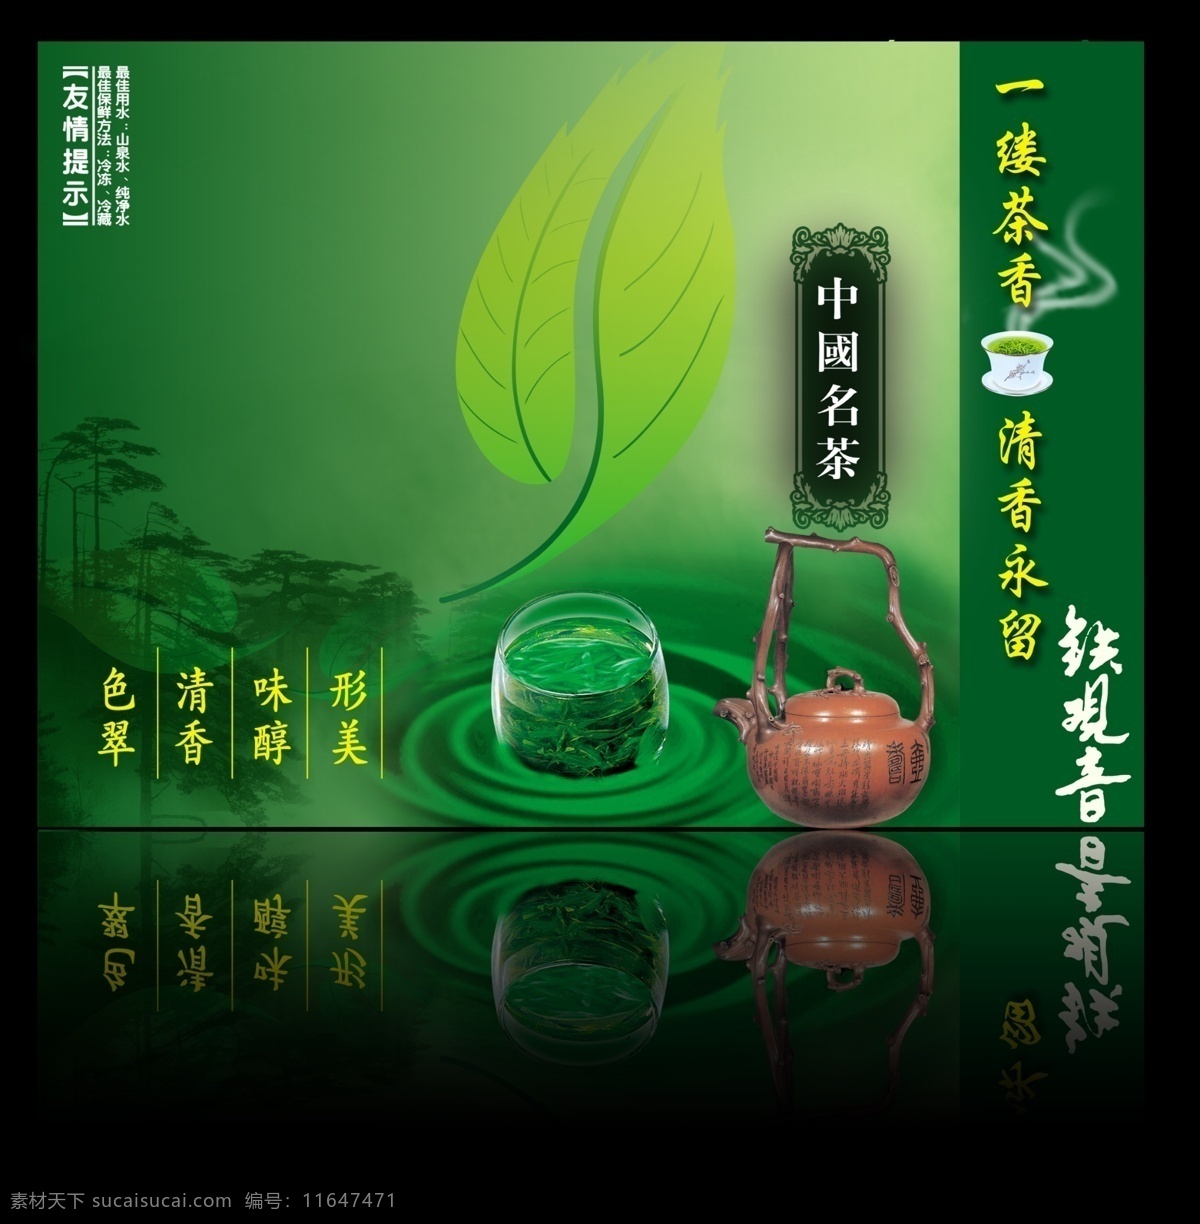 中国 名茶 铁观音 画册设计 封面设计 画册设计模板 画册设计素材 psd源文件